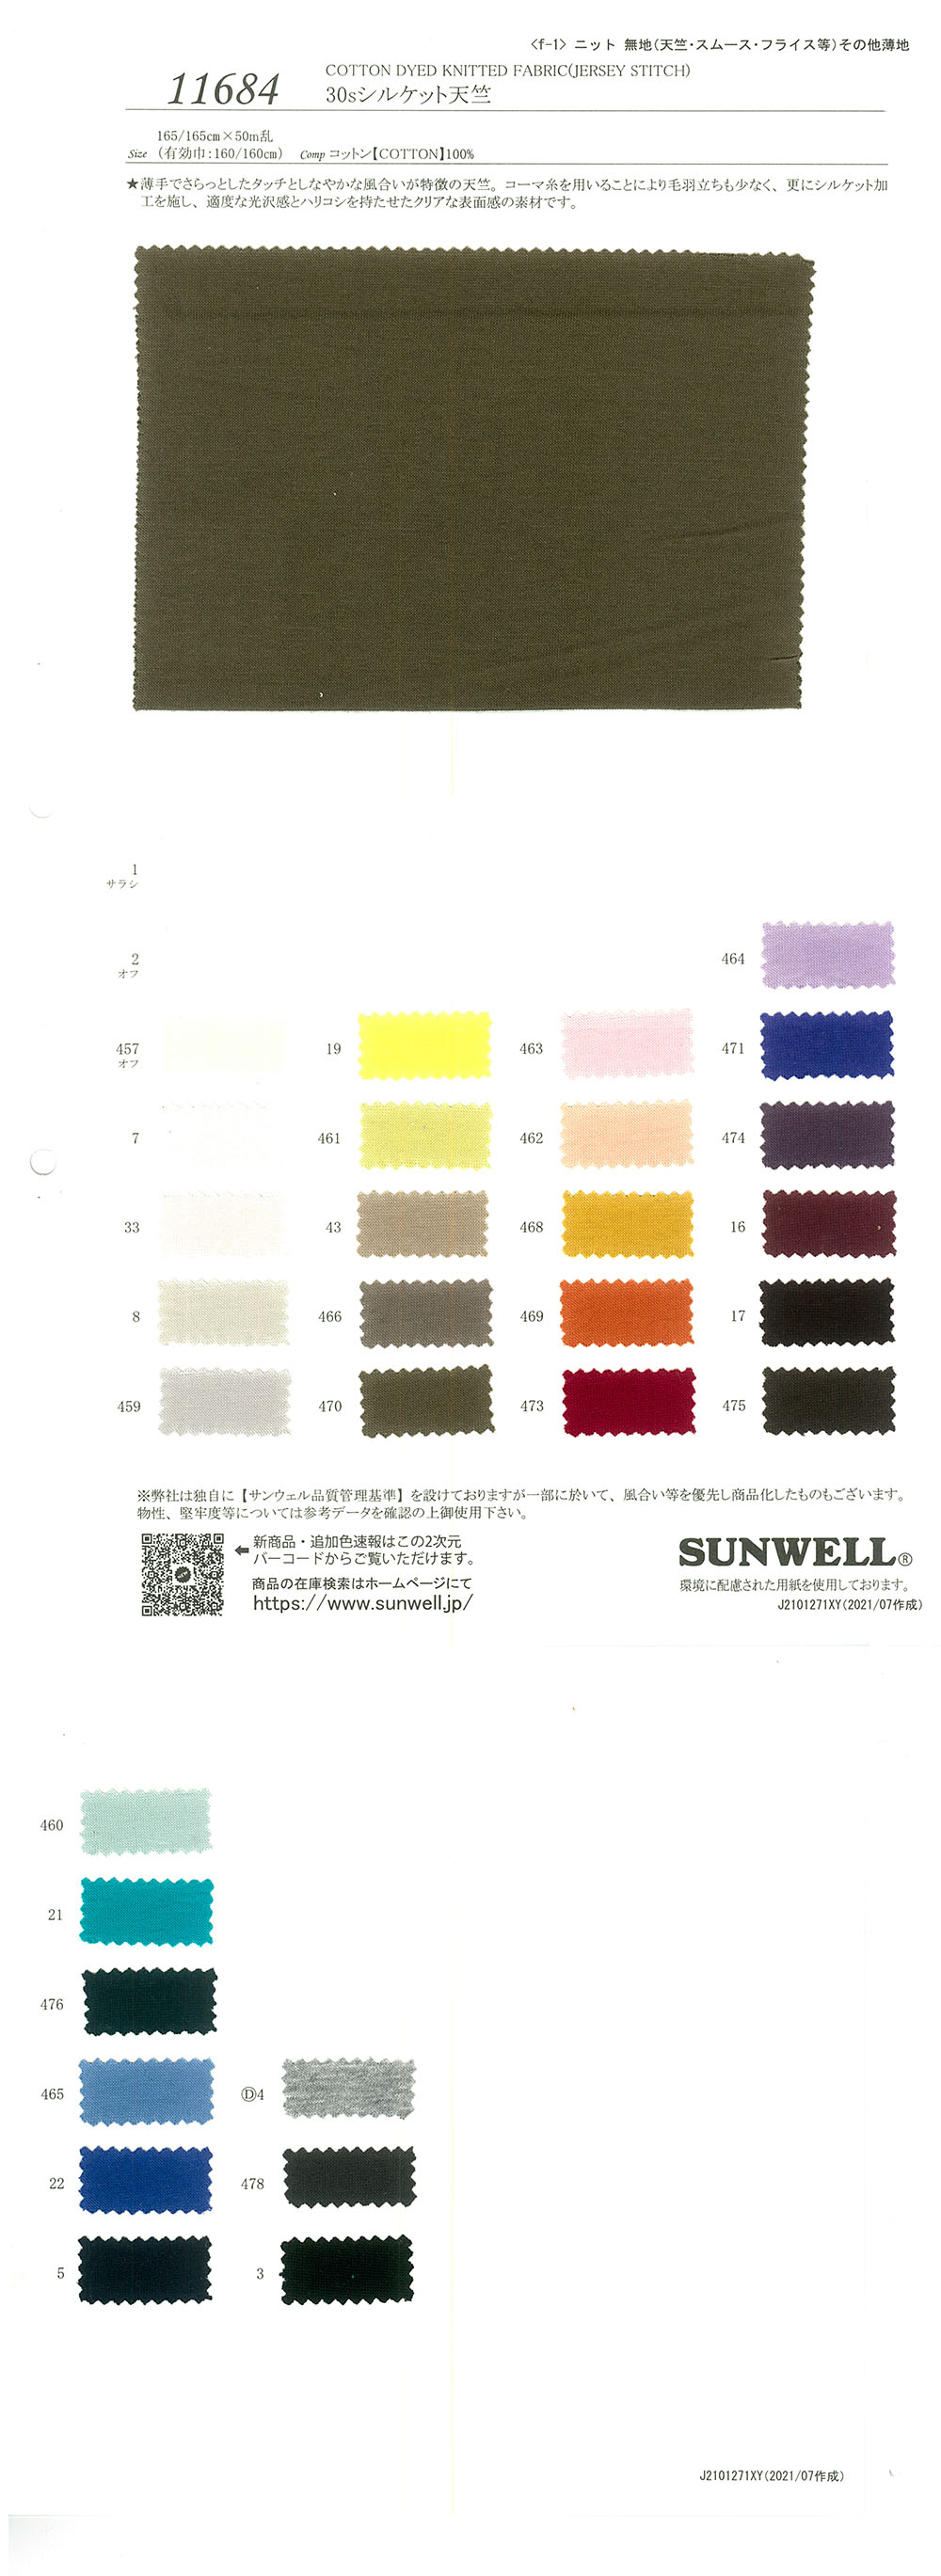 11684 30線絲光棉天竺平針織物[面料] SUNWELL